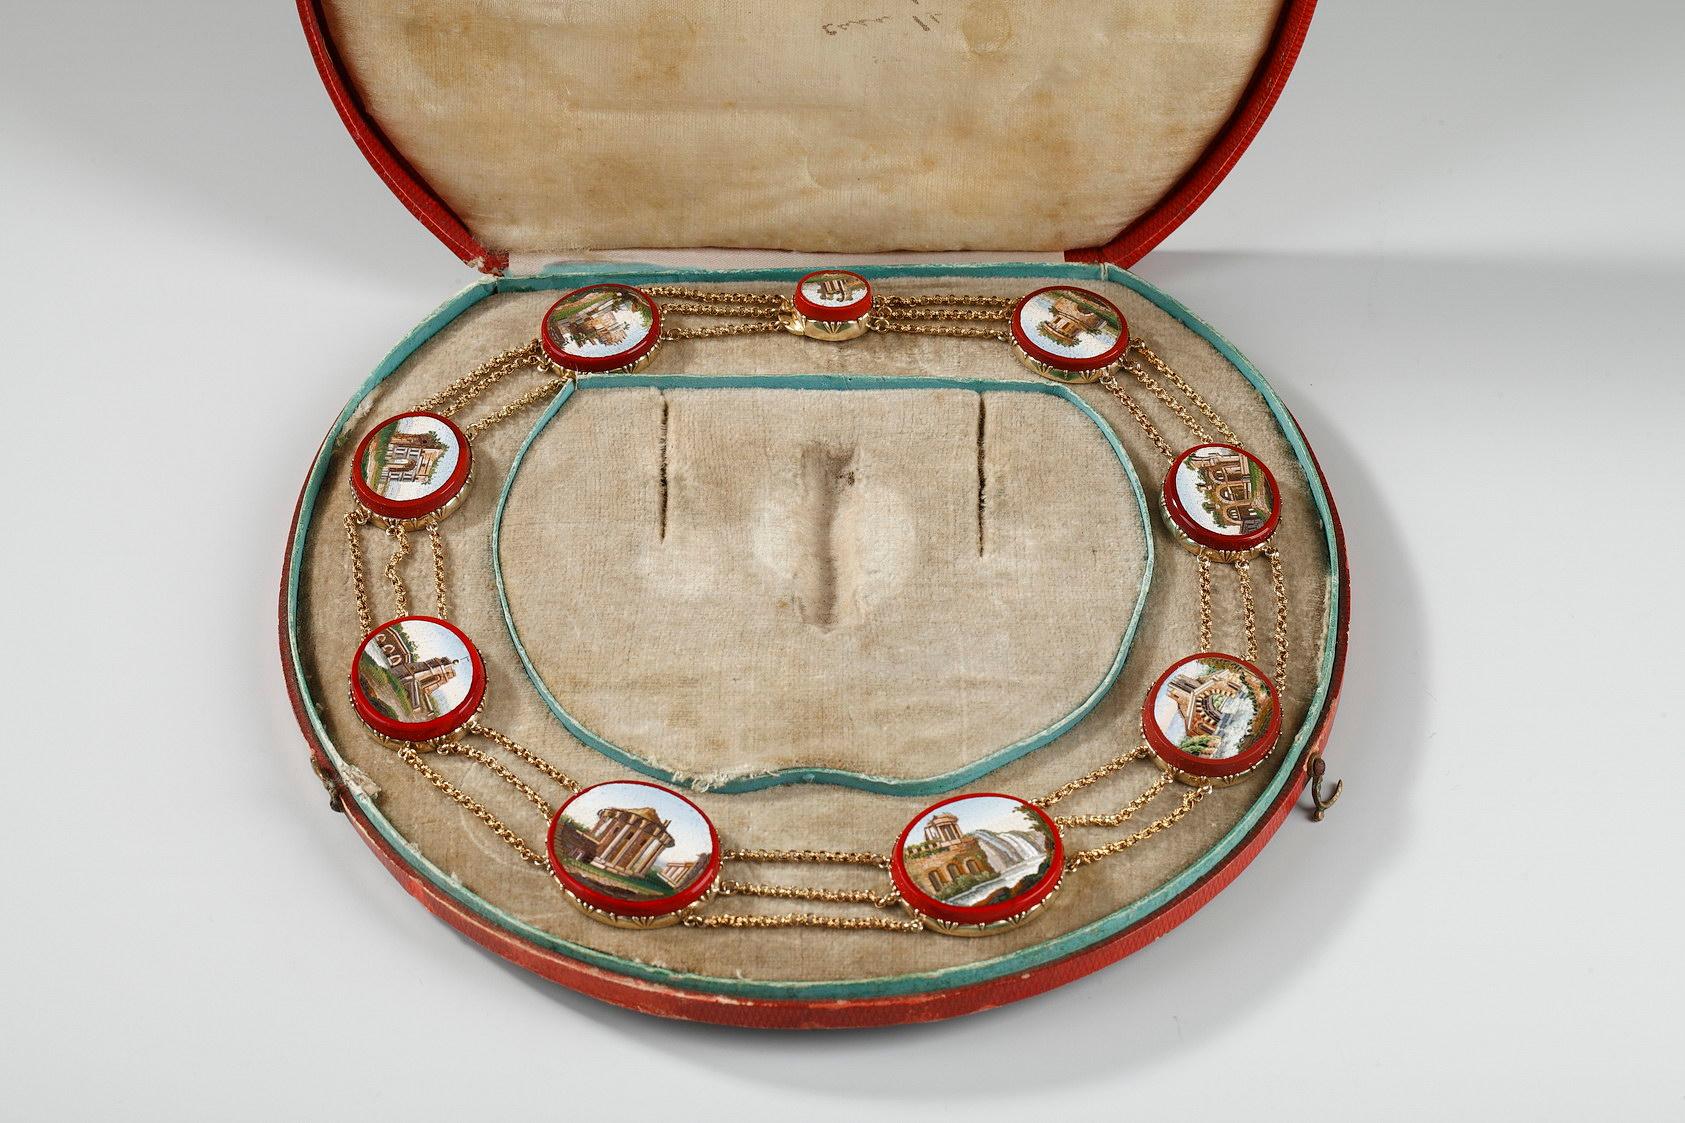 Eine dreisträngige Goldkette mit neun ovalen Mikromosaiken, die in Ovale aus rotem Purpurglas gefasst und mit dreifach geknüpften Goldketten verbunden sind. Jedes Mikromosaik stellt ein Monument aus dem alten Rom dar.
die Mikromosaike zeigen den